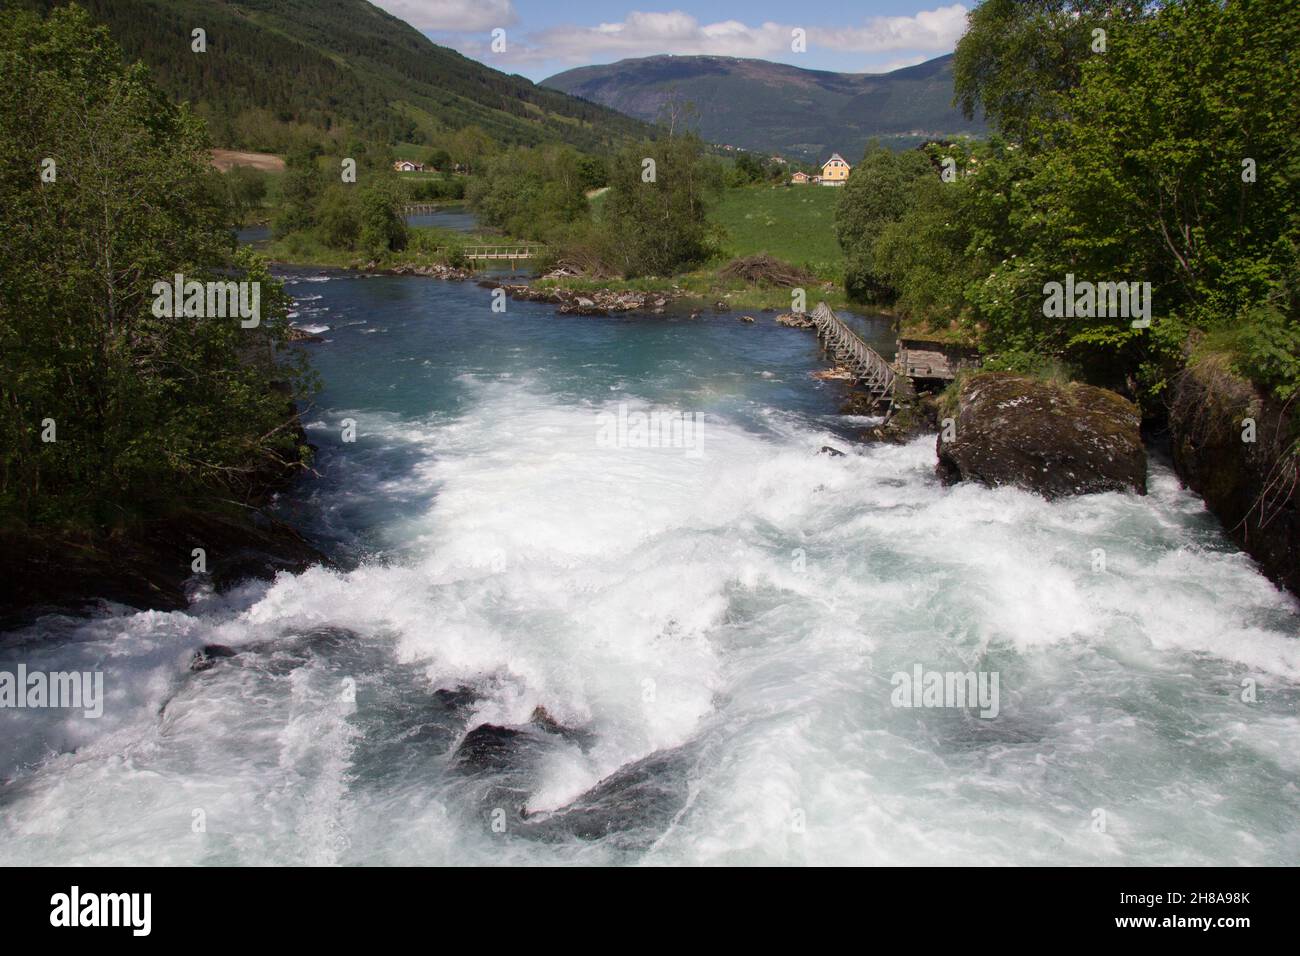 Laukifossen, rivière Oldeelva, Olden, Norvège.Comté de Sogn og Fjordane. Banque D'Images